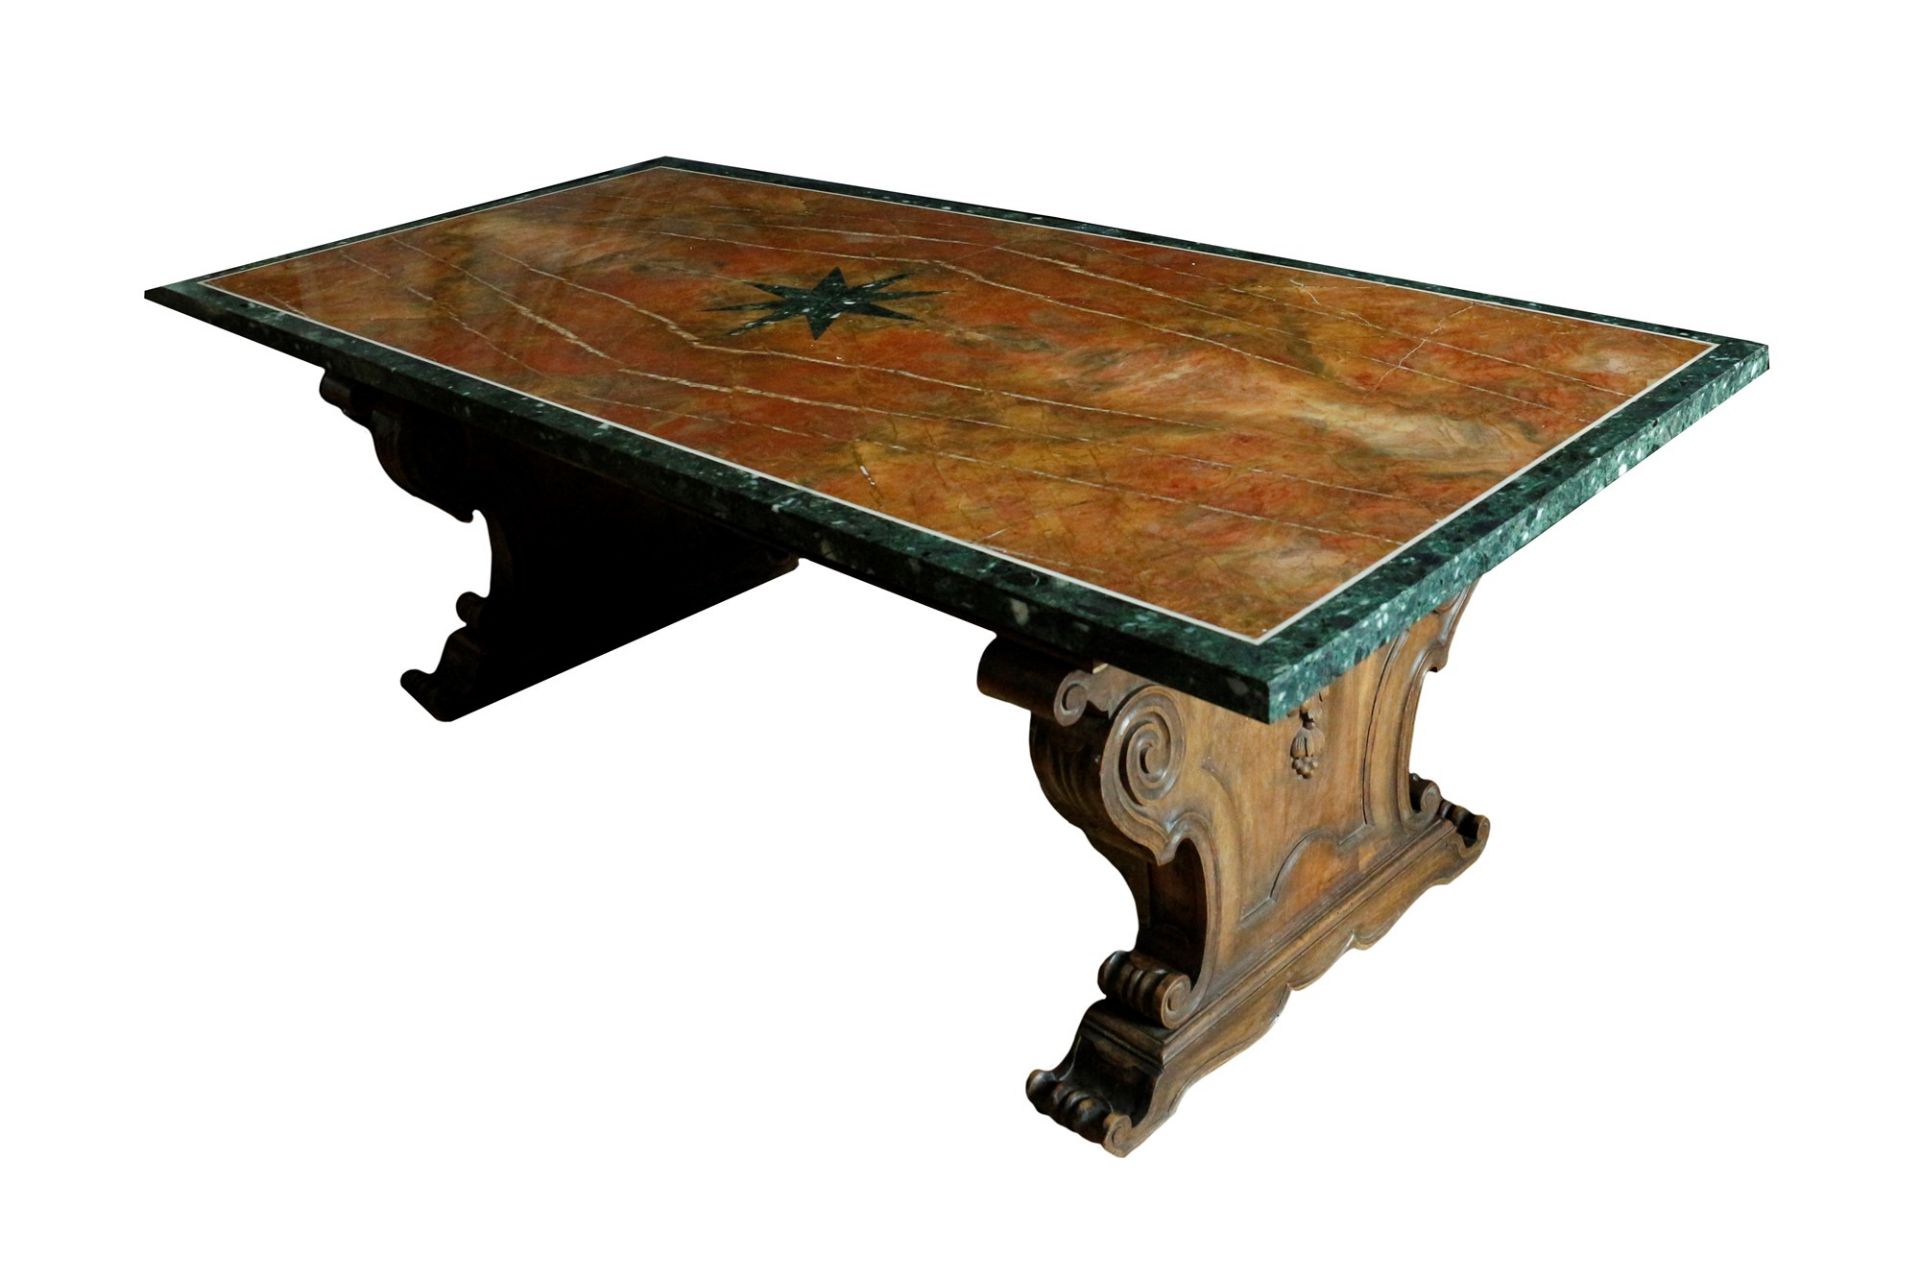 Grande tavolo con piano lastronato in marmo diaspro rosso di Numidia e cornice in marmo verde. Decor